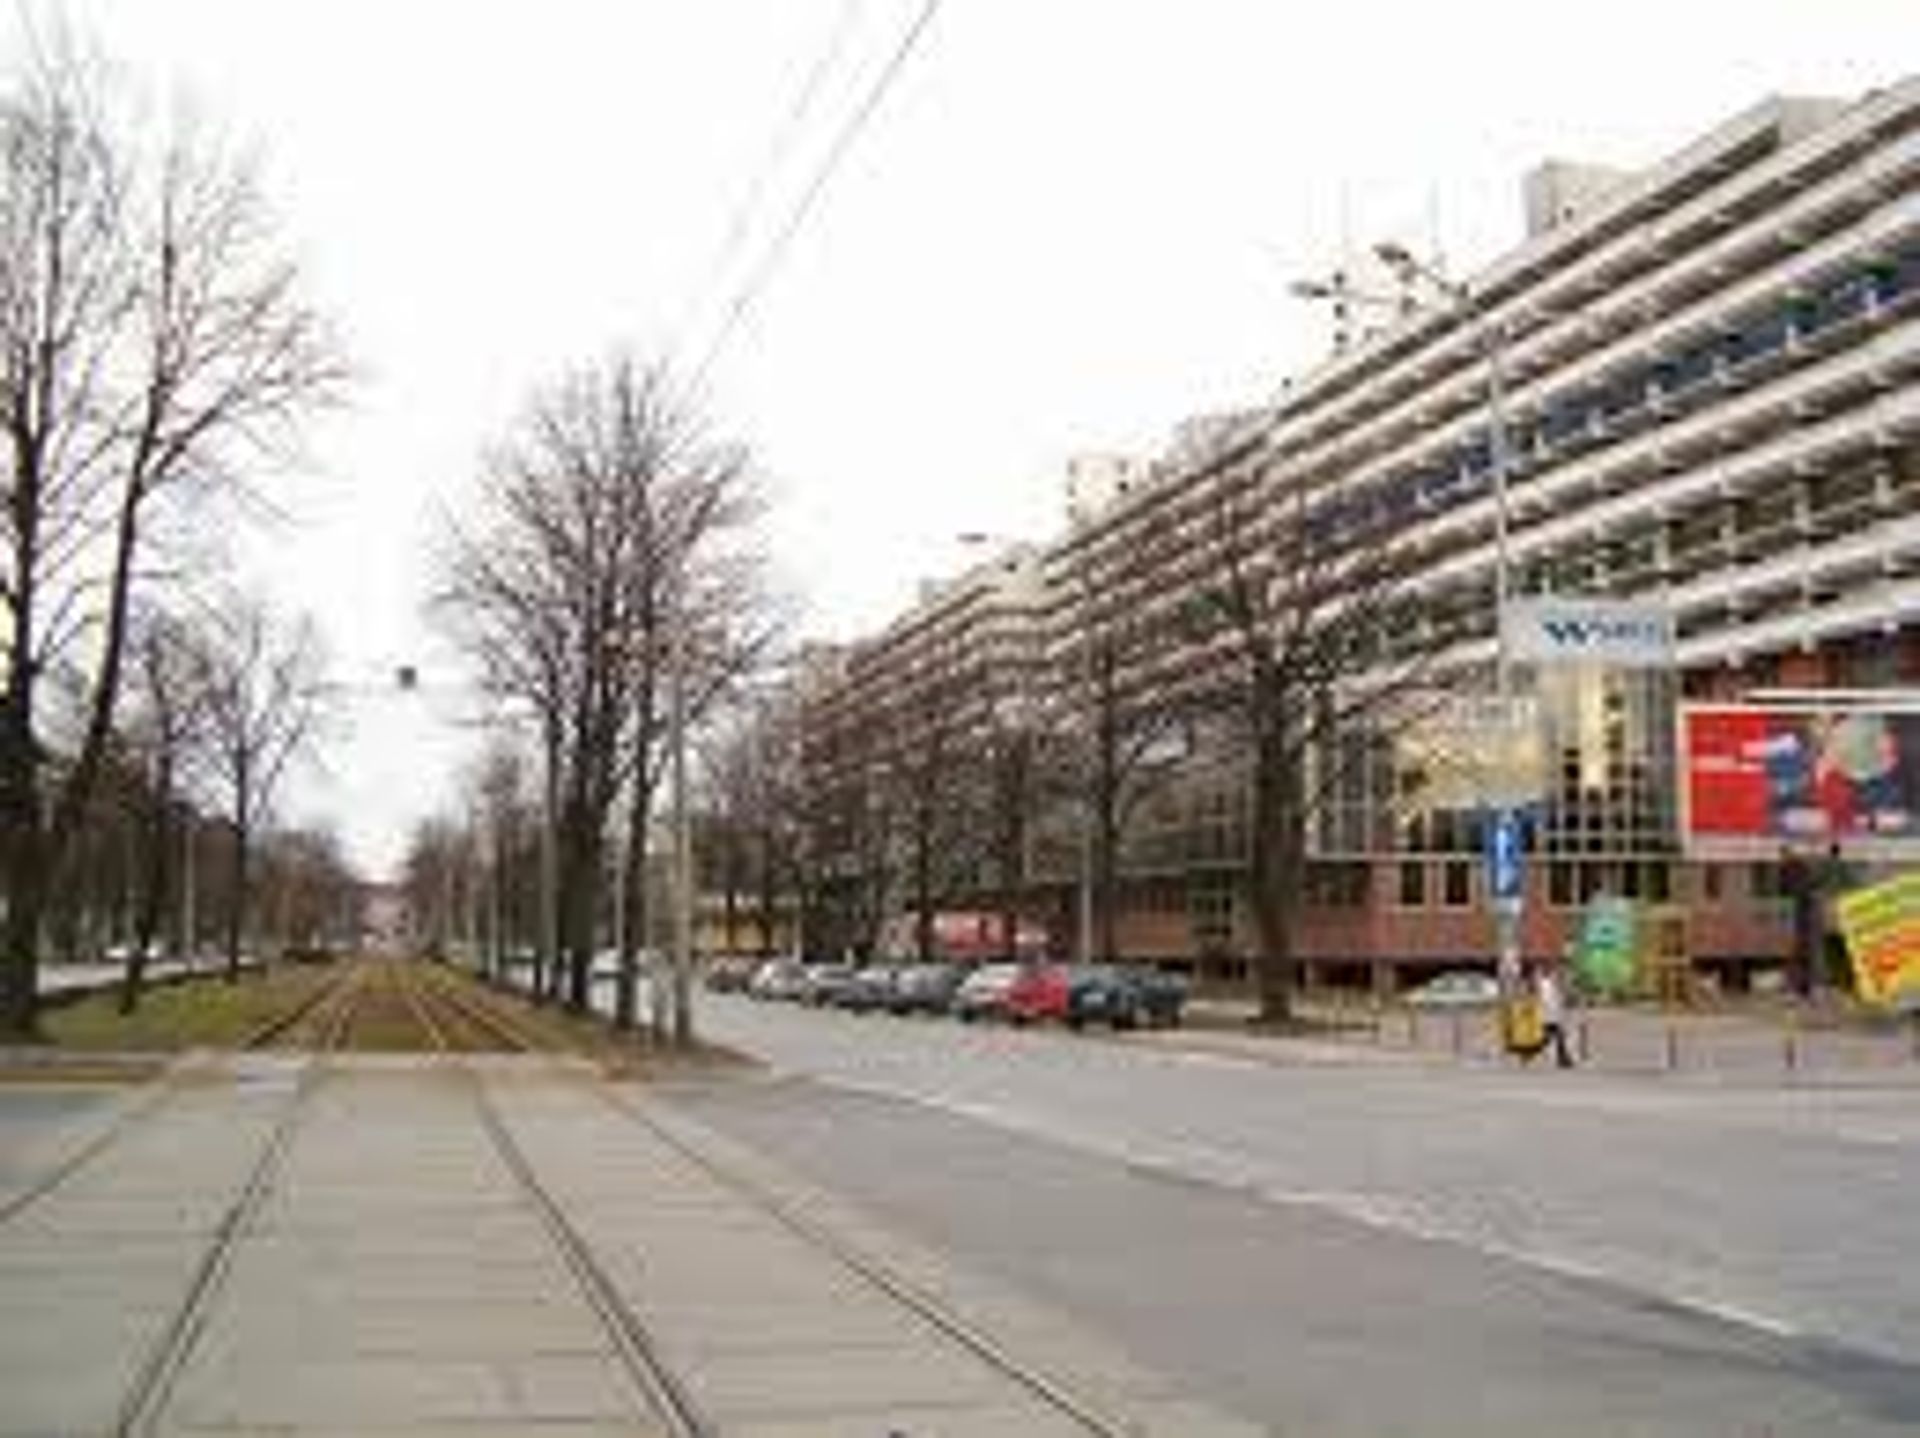  BNY Mellon rozbudowuje Globalne Centrum Usług we Wrocławiu